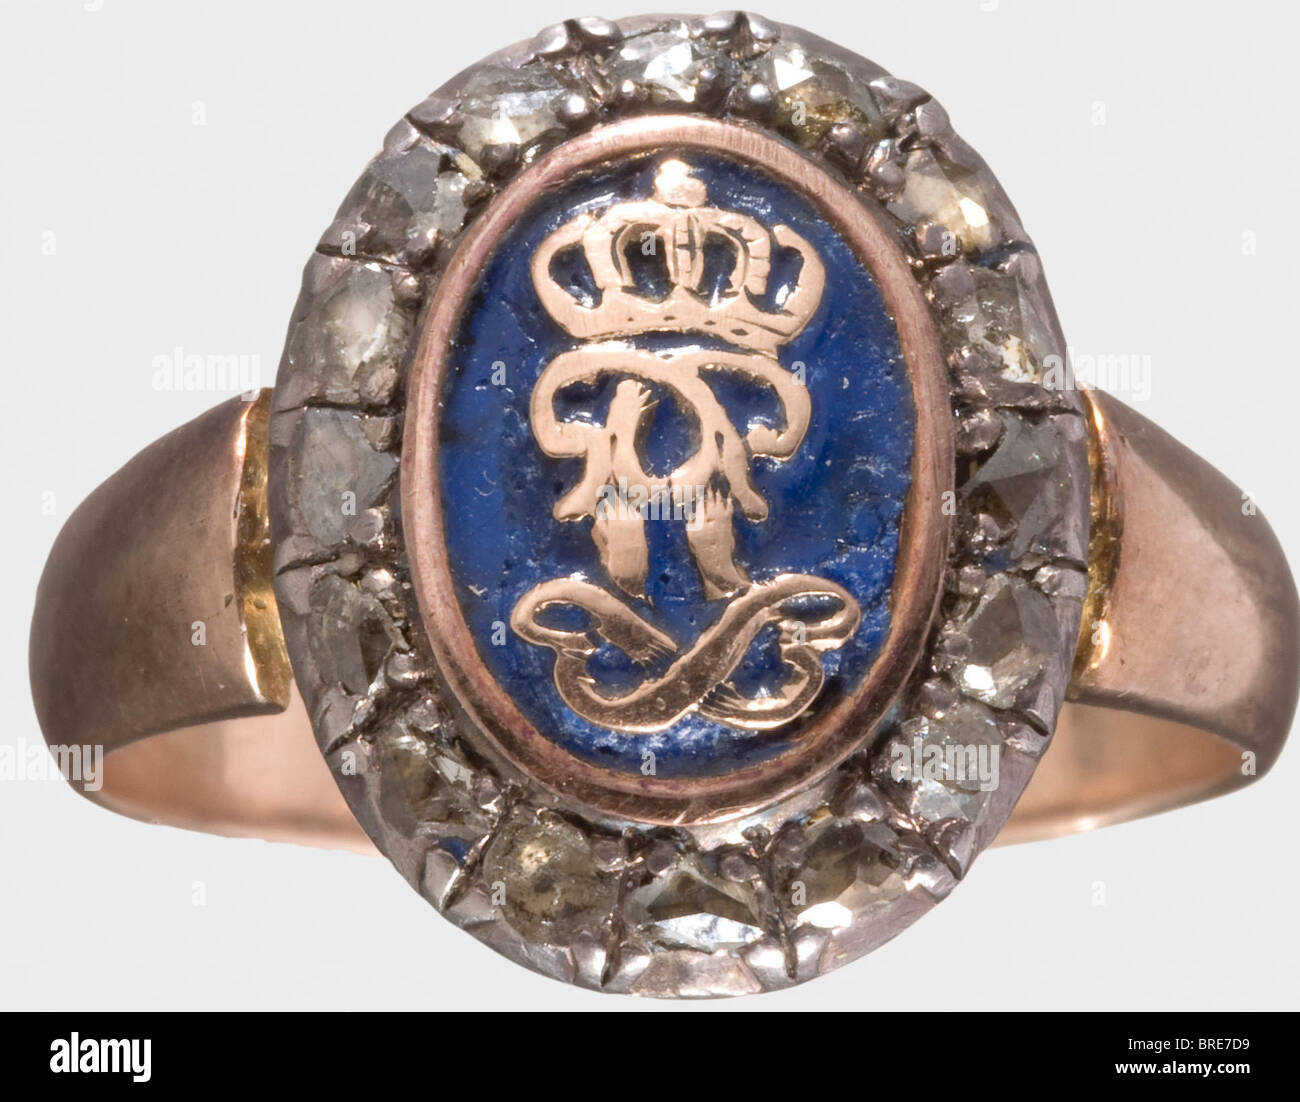 Le prince Regent Luitpold de Bavière (1821 - 1912), un anneau de présentation monogrammé et un stickpin doré et l'or stickpin. L'anneau porte la marque '585' et affiche un chiffre central 'PL' en émail bleu, entouré de seize copeaux de diamant. L'émail de l'anneau a été incorrectement réparé. L'émail de la broche d'adhérence est quelque peu endommagé. Les deux pièces présentent de légères marques d'usure. Médaillon 14 x 18 mm. Bague de 19 mm. Historique, historique, XIXe siècle, Bavière, bavarois, allemand, Allemagne, Sud de l'Allemagne, Sud de l'Allemagne, Royal, objet, objets, photos, Banque D'Images